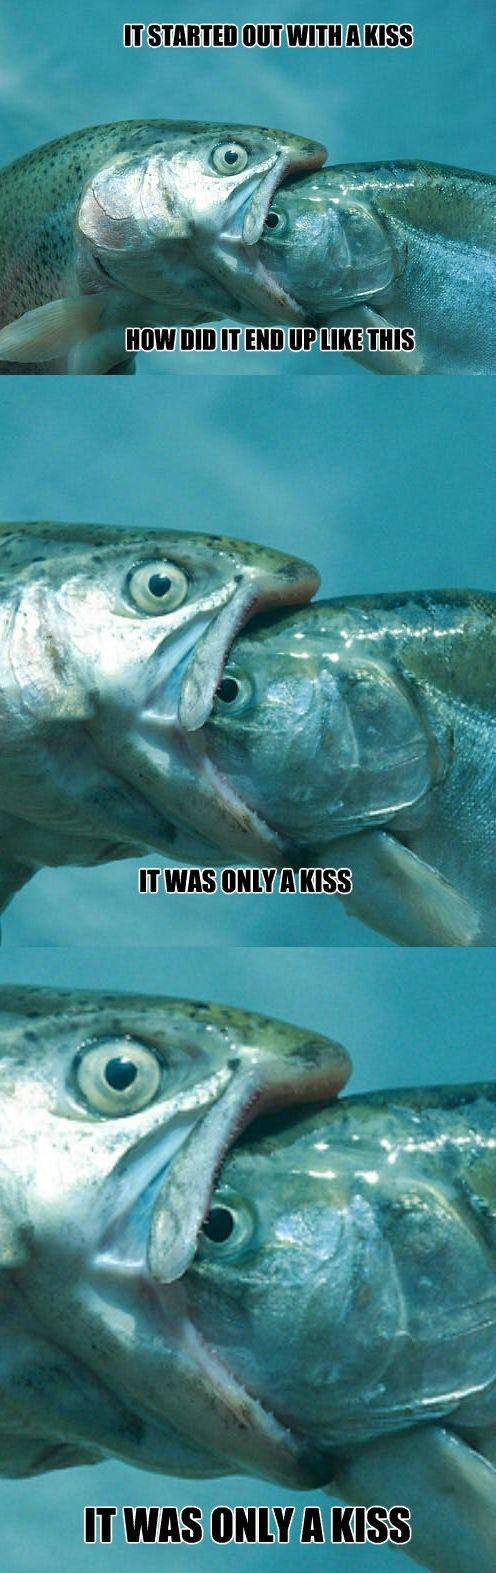 Obrázek only kiss